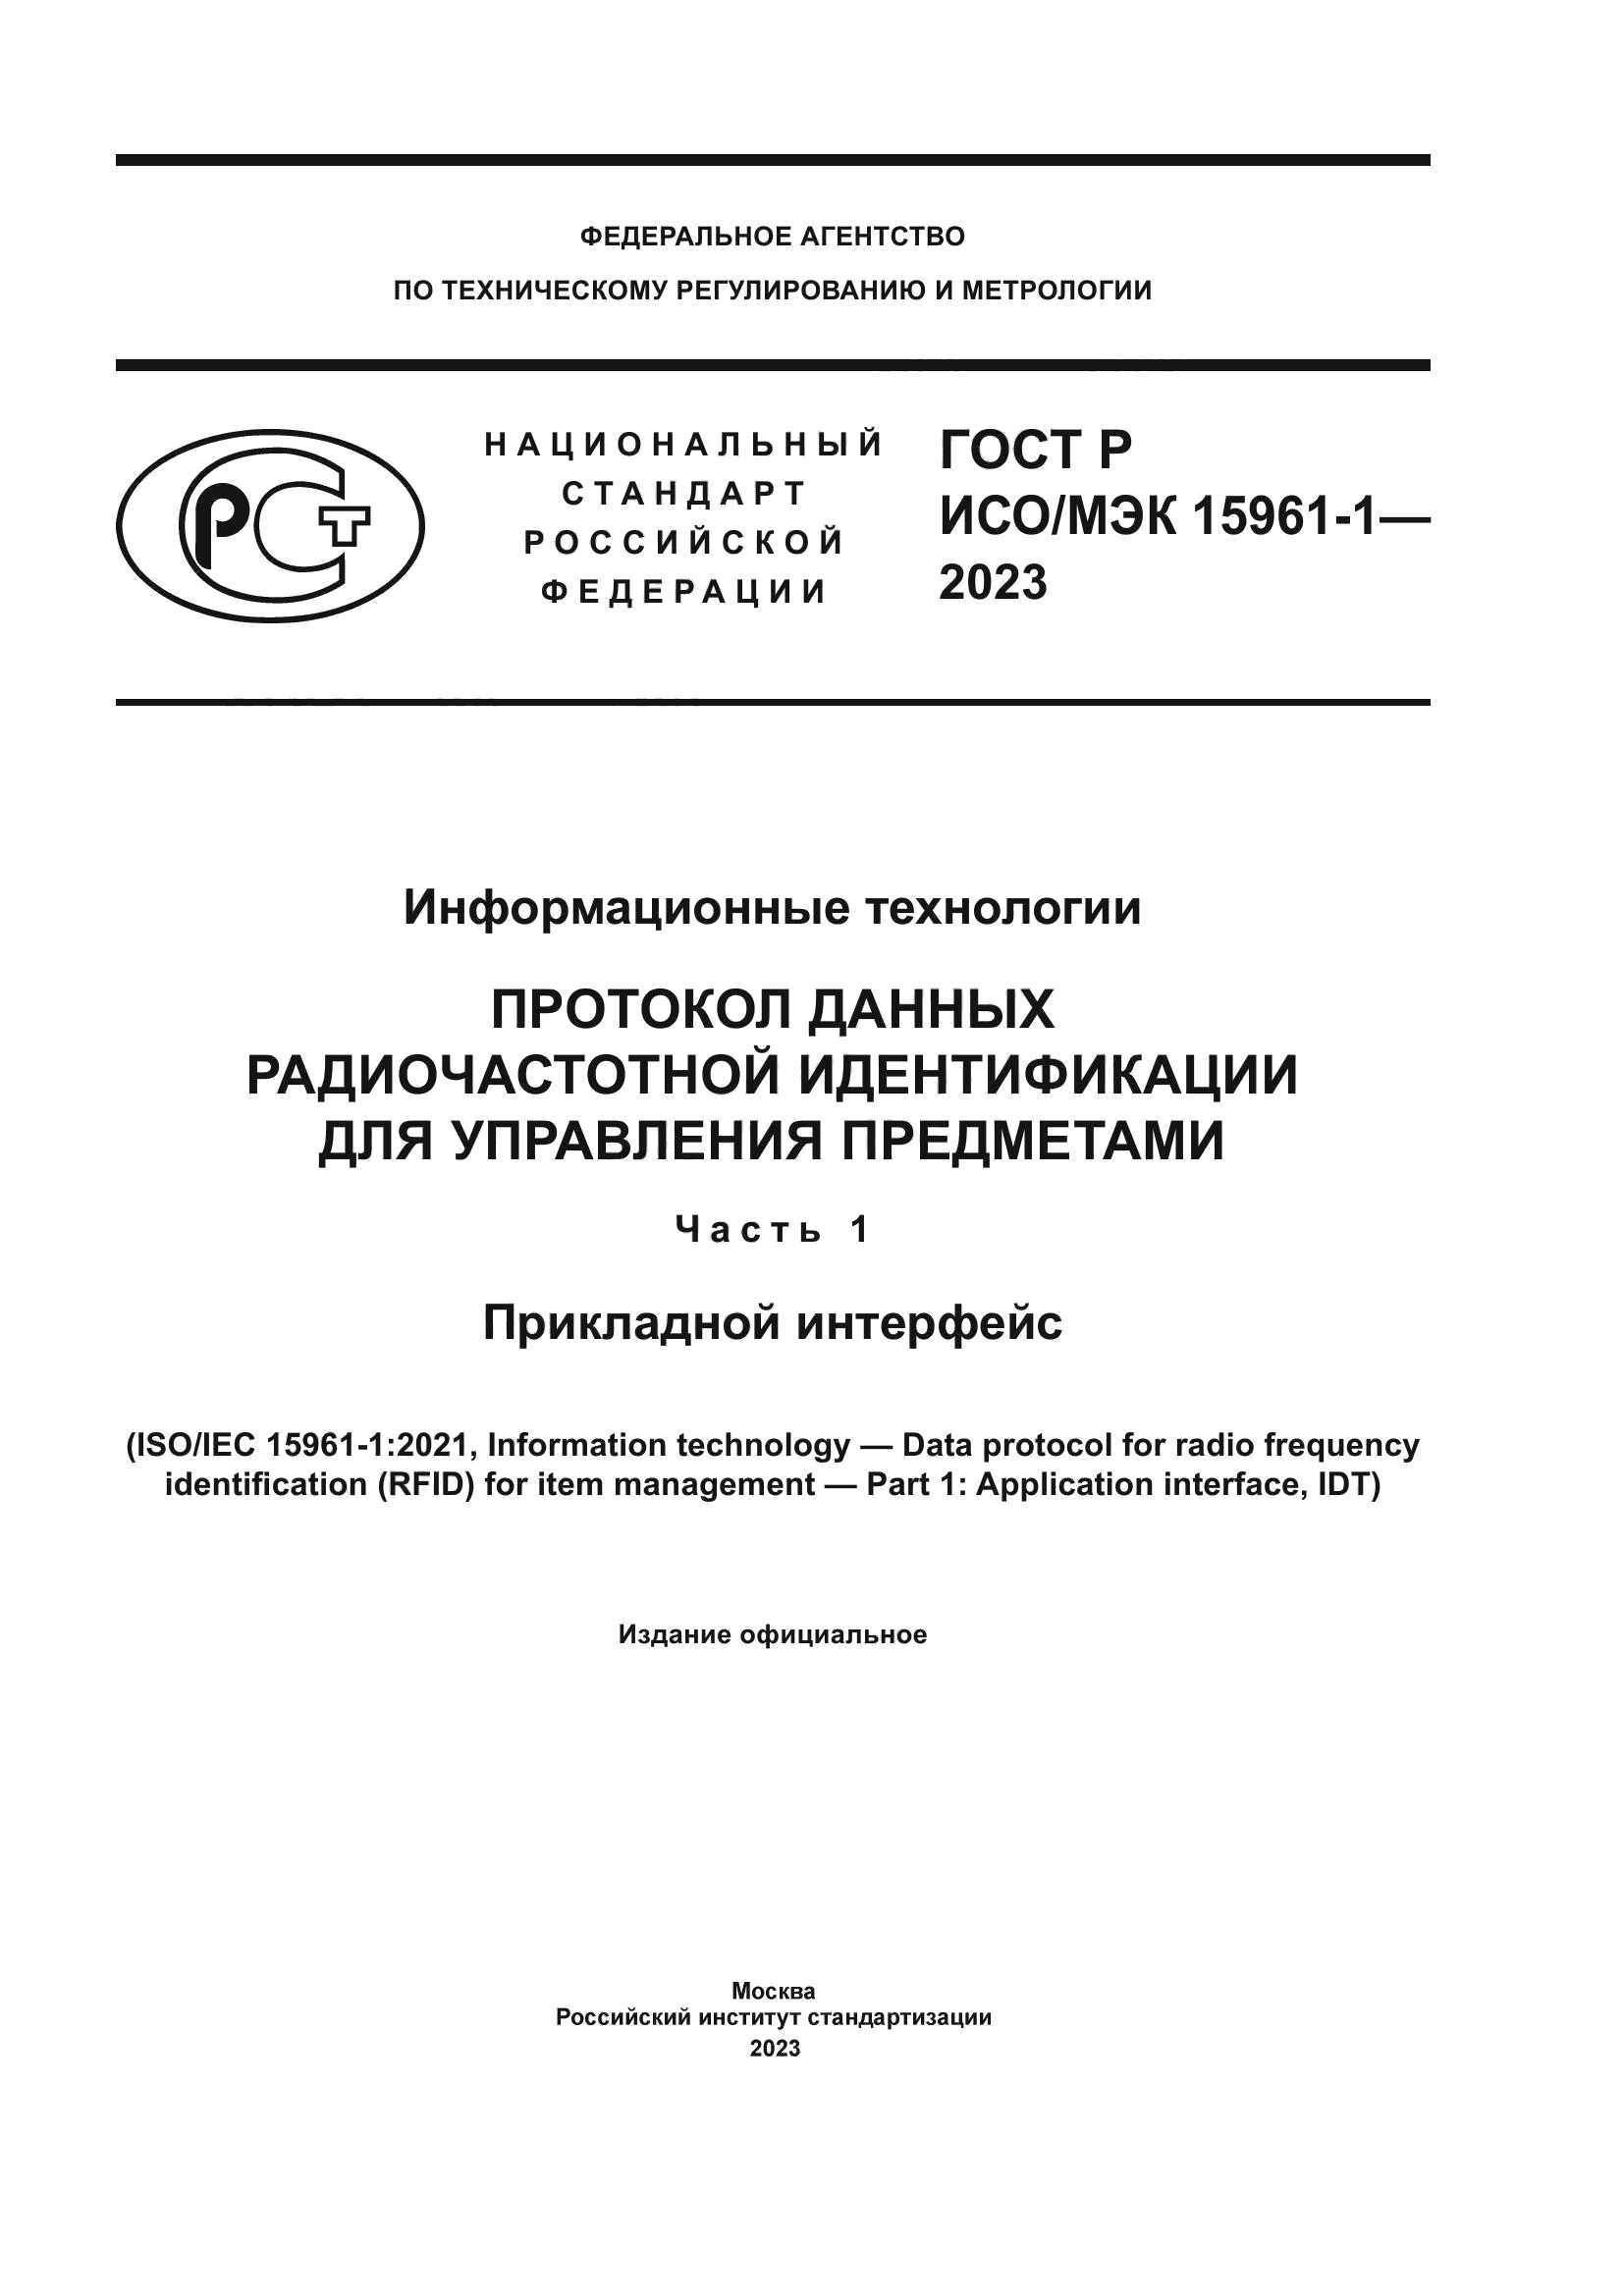 ГОСТ Р ИСО/МЭК 15961-1-2023